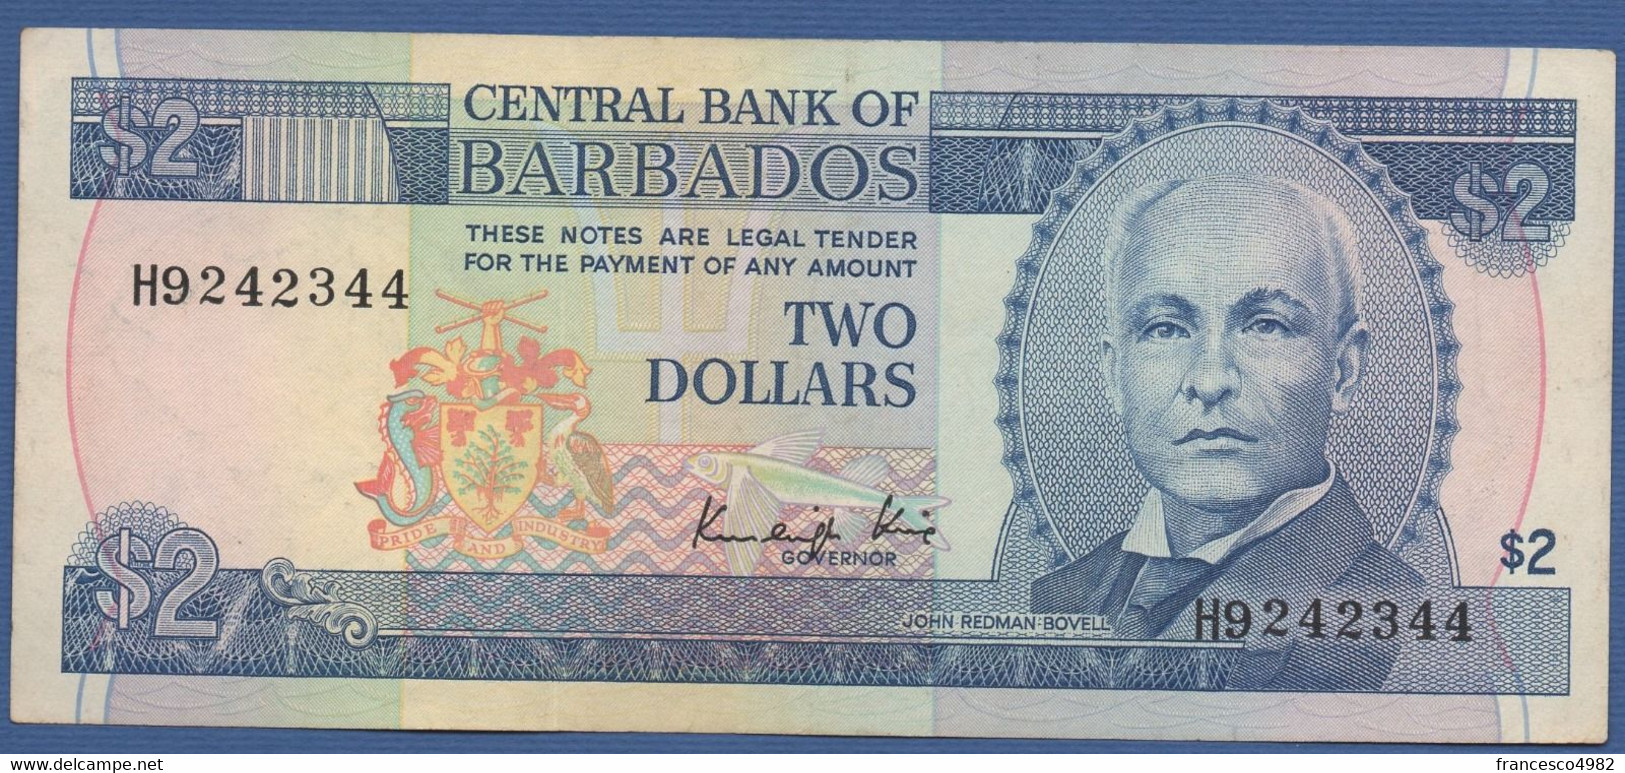 BARBADOS - P.36a –  2 DOLLARS ND (1986) - CIRCULATED - Printer  De La Rue, London - Serie H9242344 - Barbados